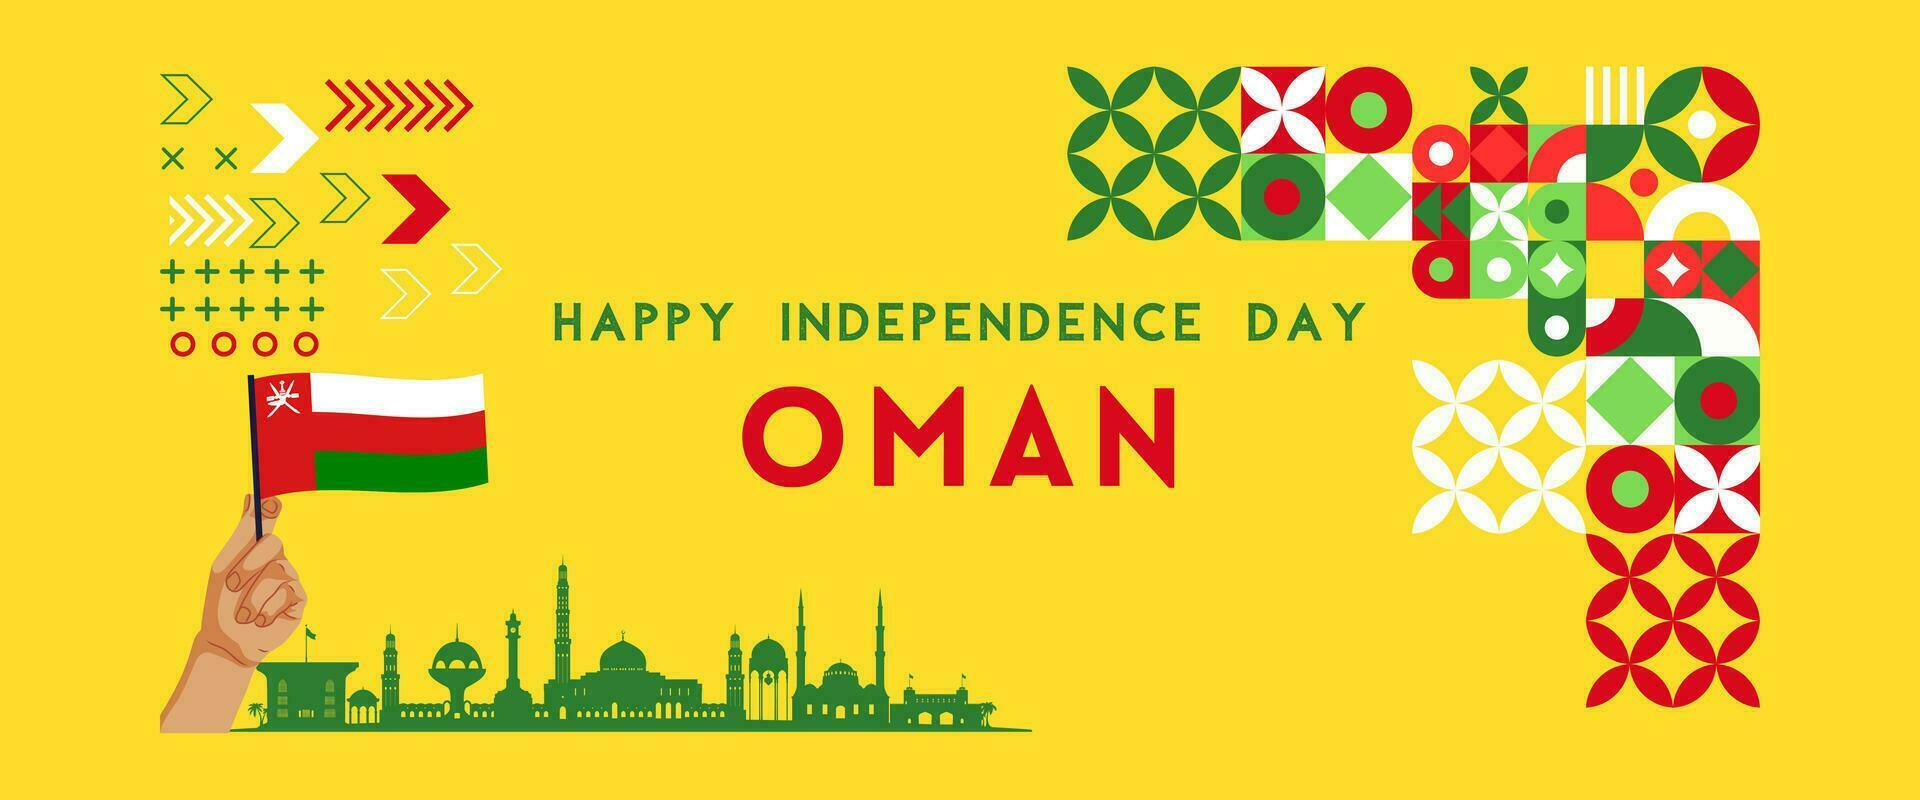 Omán nacional día bandera para independencia día aniversario. bandera de Omán y moderno geométrico retro resumen diseño vector